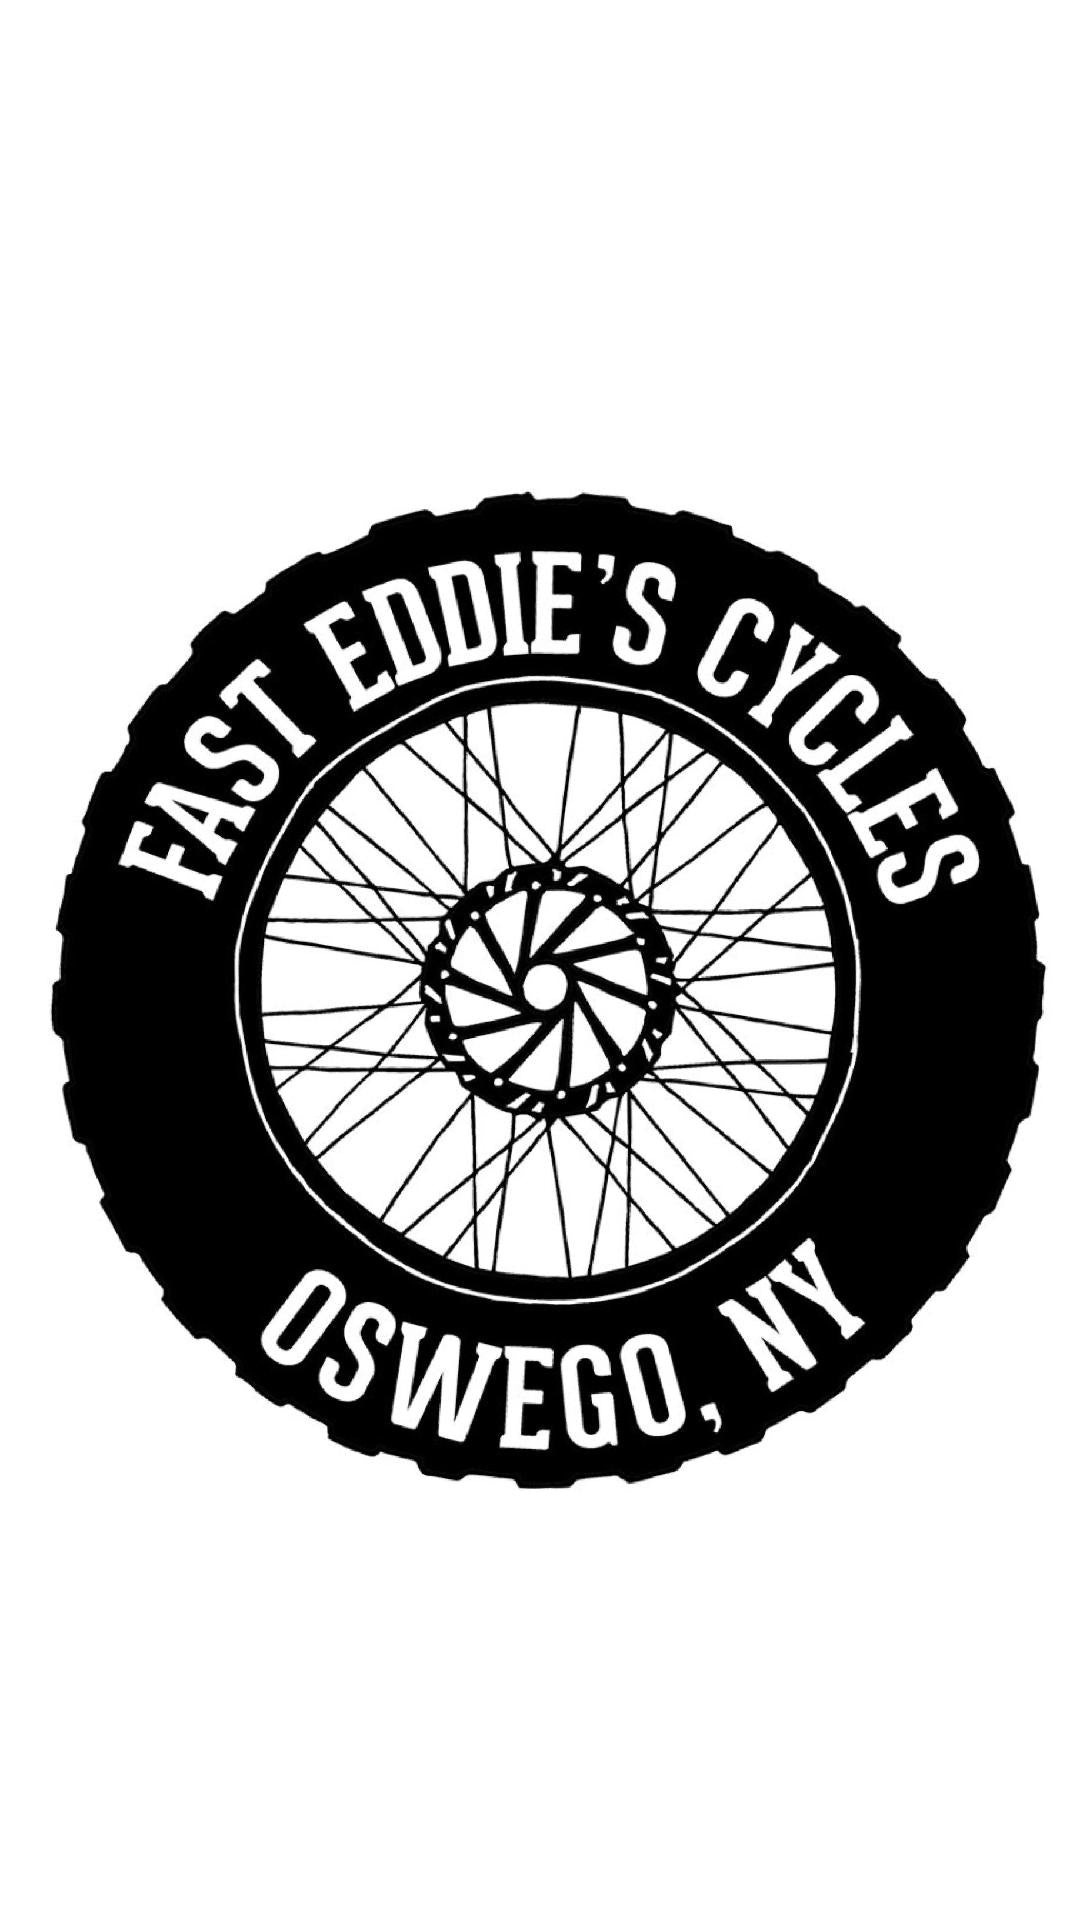 Fast Eddie's Cycles